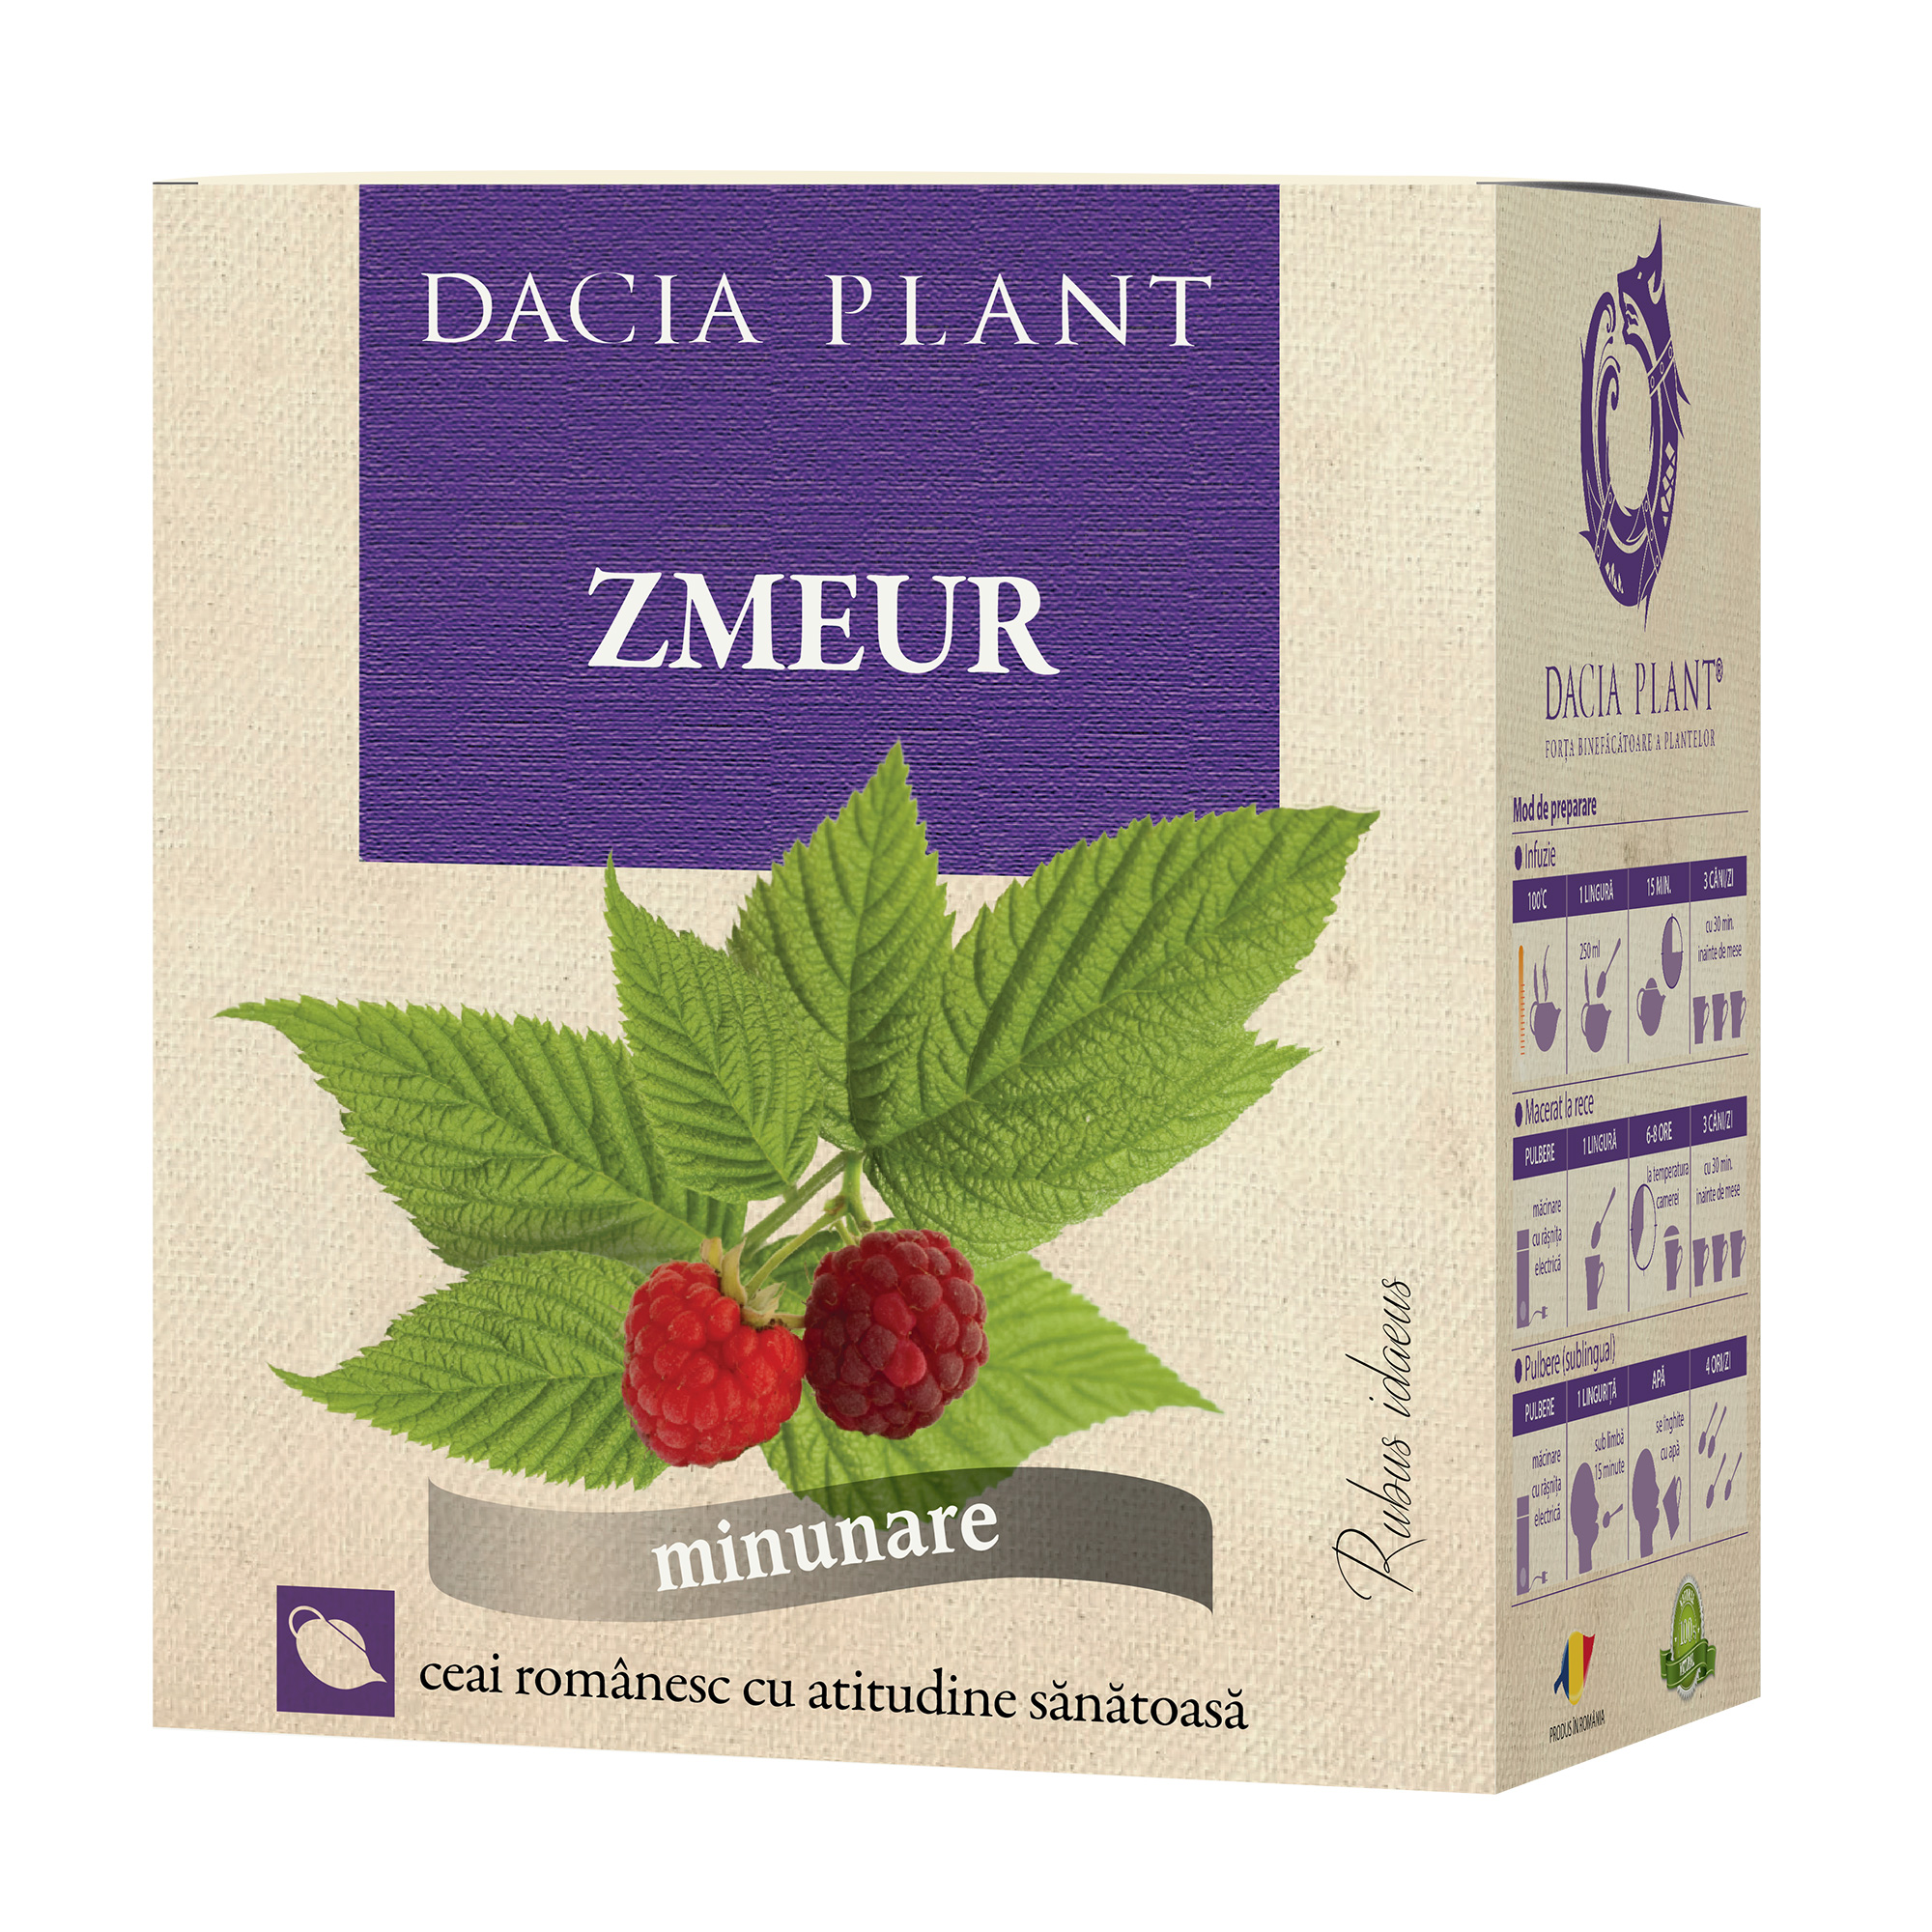 Ceai de Zmeur Dacia Plant